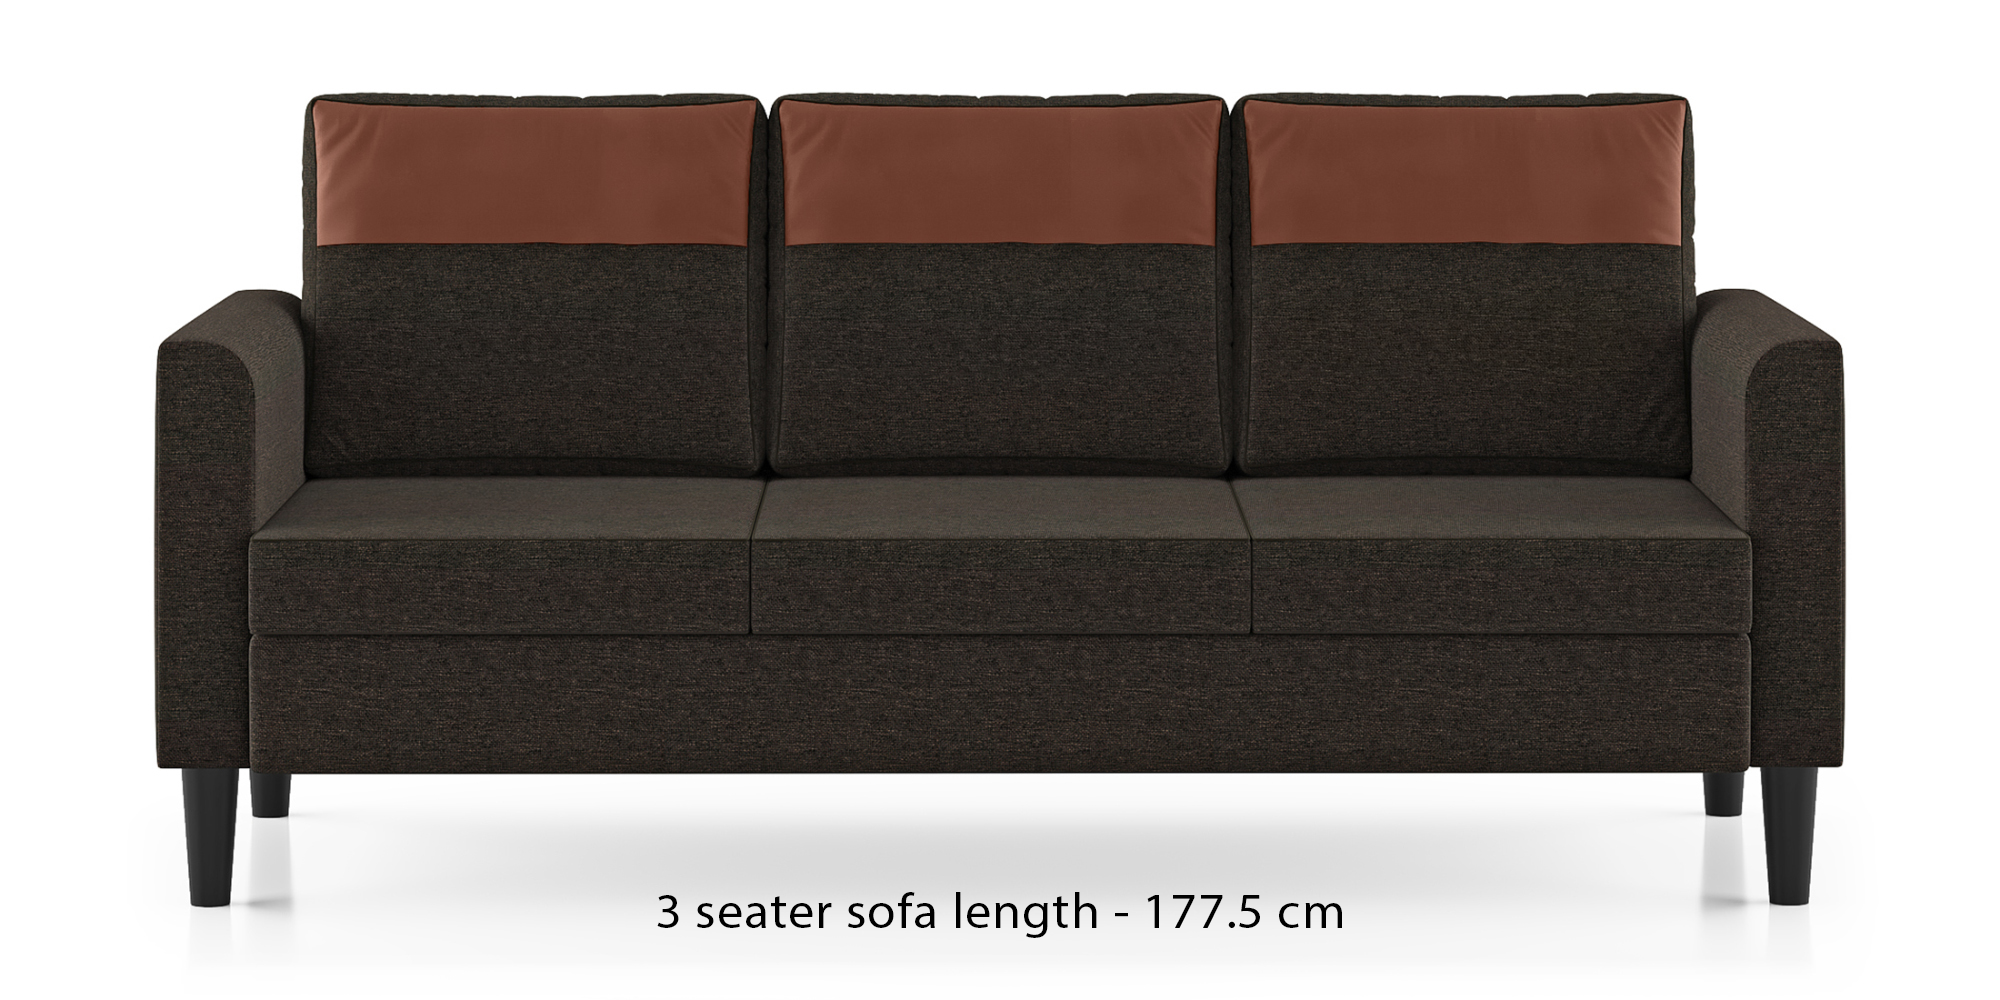 Hugo Fabric Sofa (Cedar Brown) (3-seater Custom Set - Sofas, None Standard Set - Sofas, Fabric Sofa Material, Regular Sofa Size, Regular Sofa Type, Cedar Brown) by Urban Ladder - - 575241